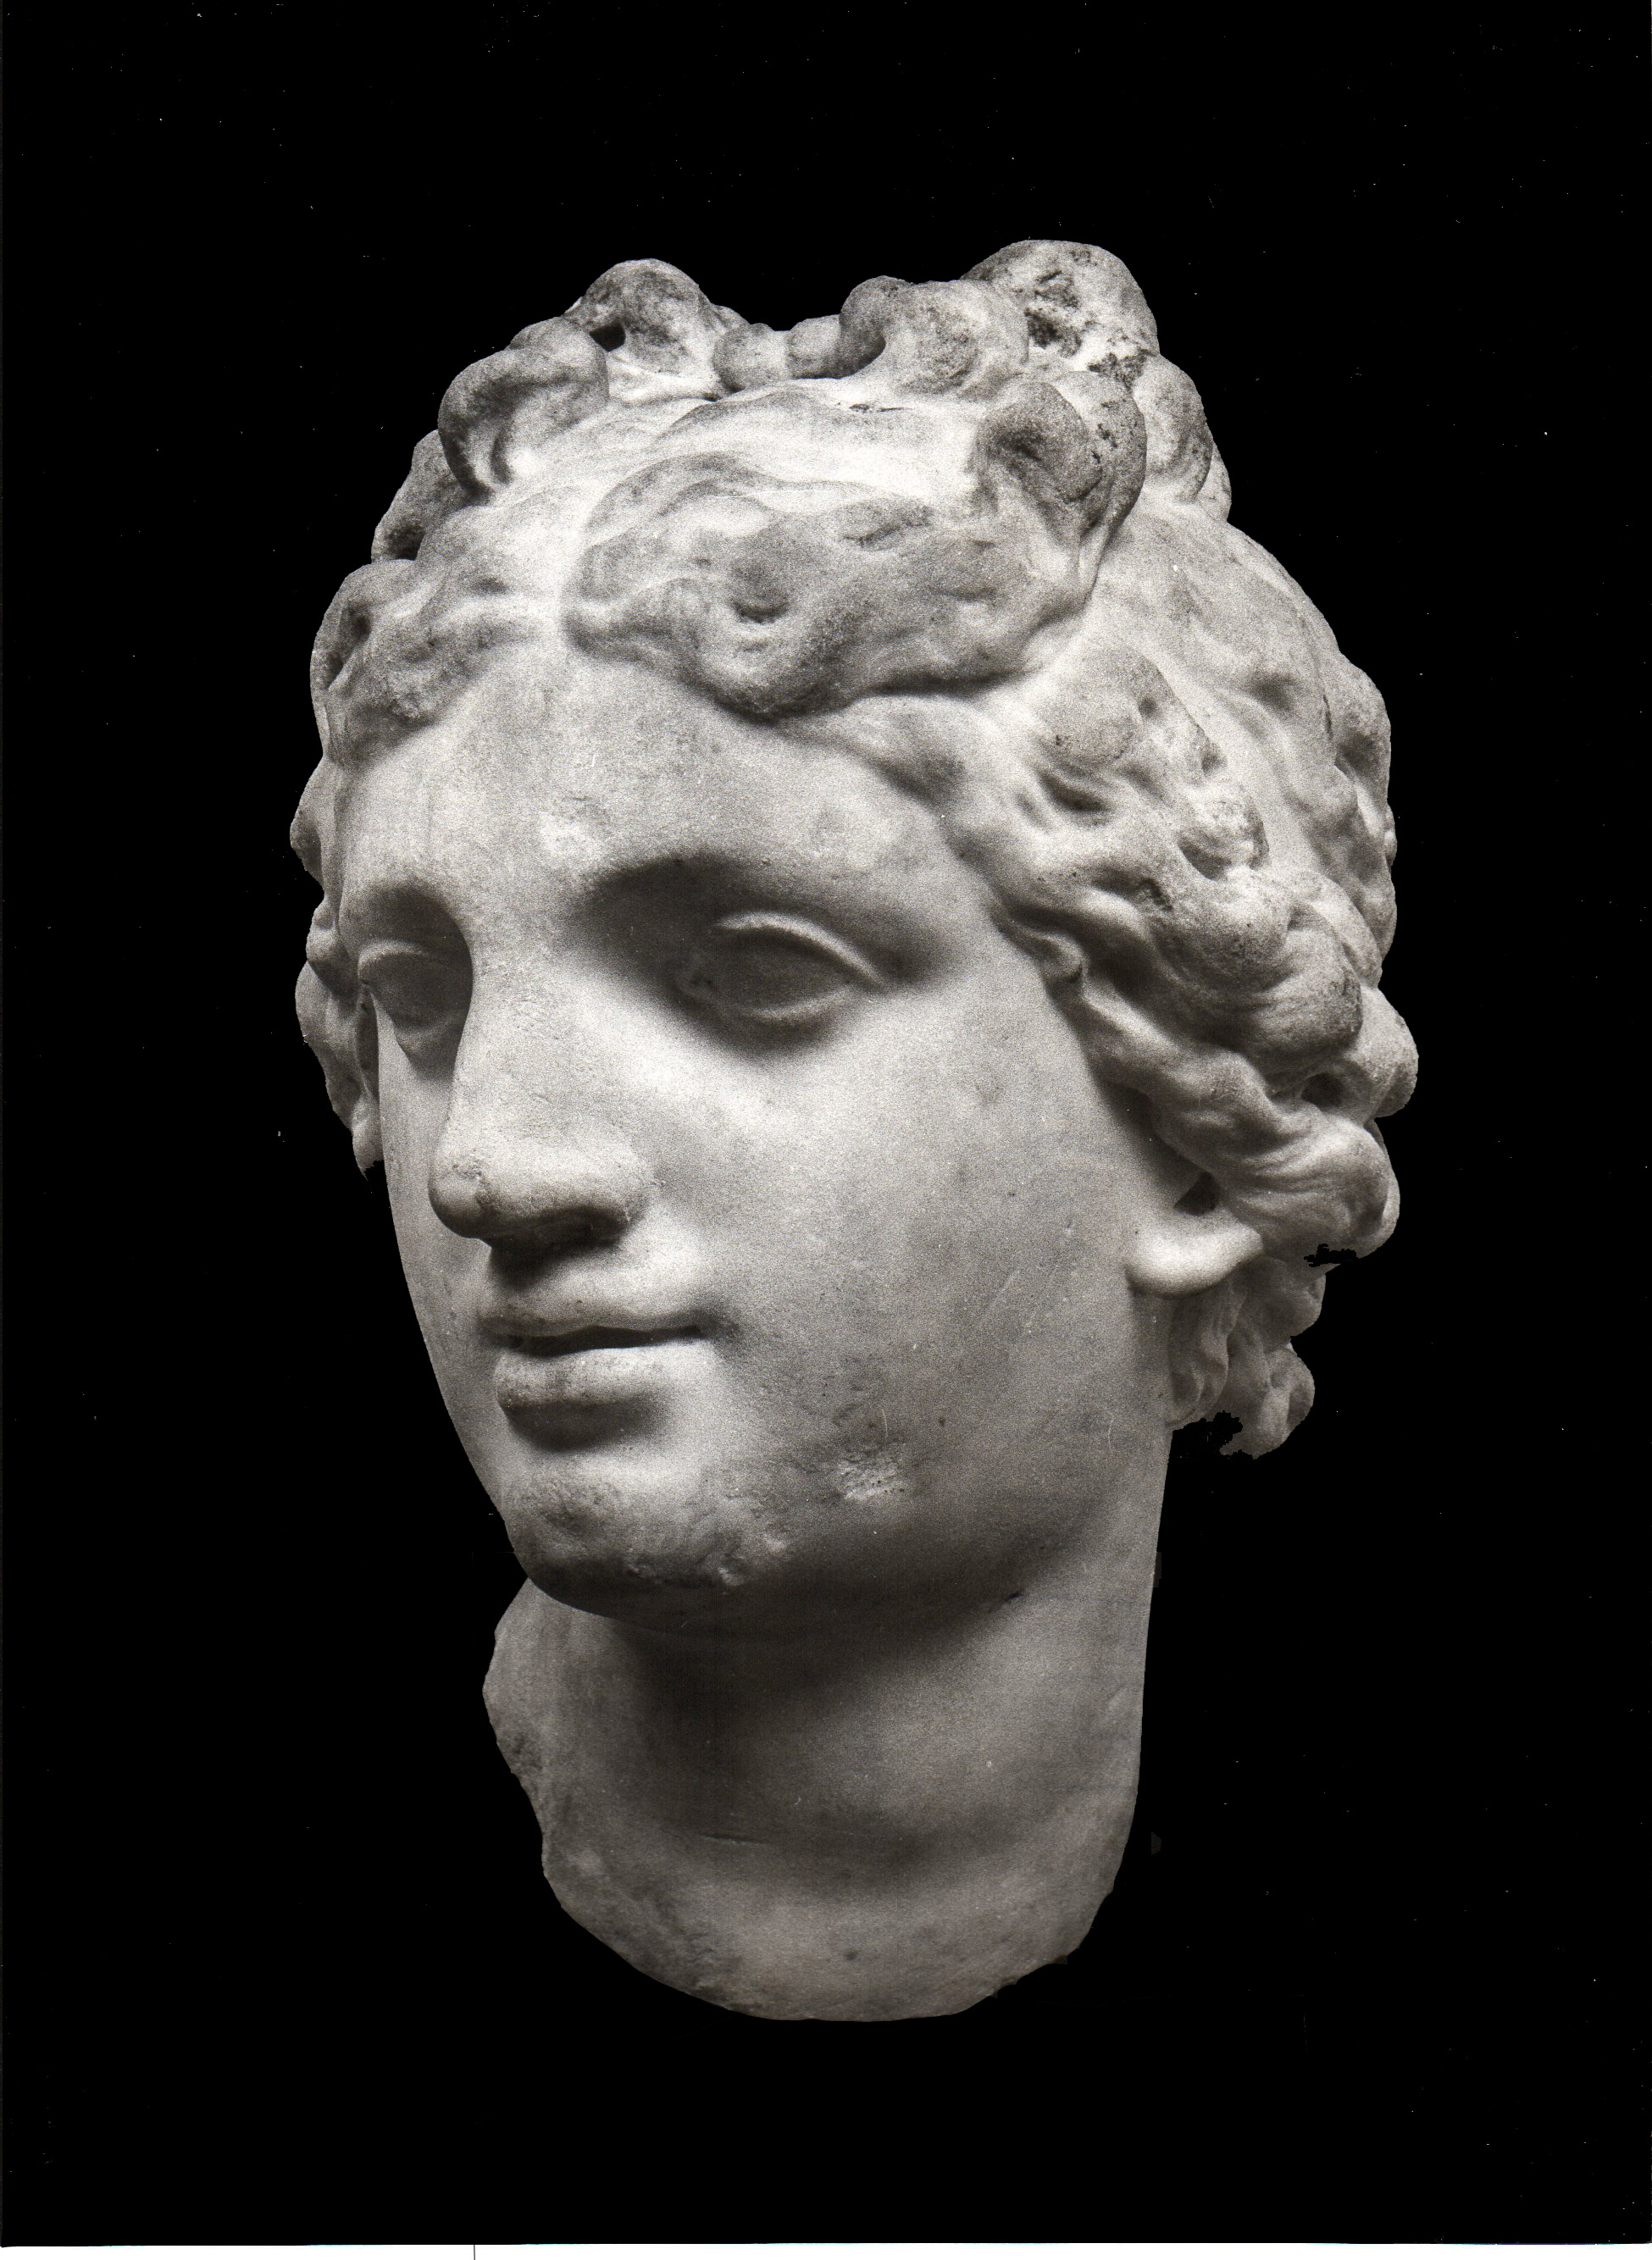 Tête de l'Aphrodite priginale de Cnide de Praxitèle.